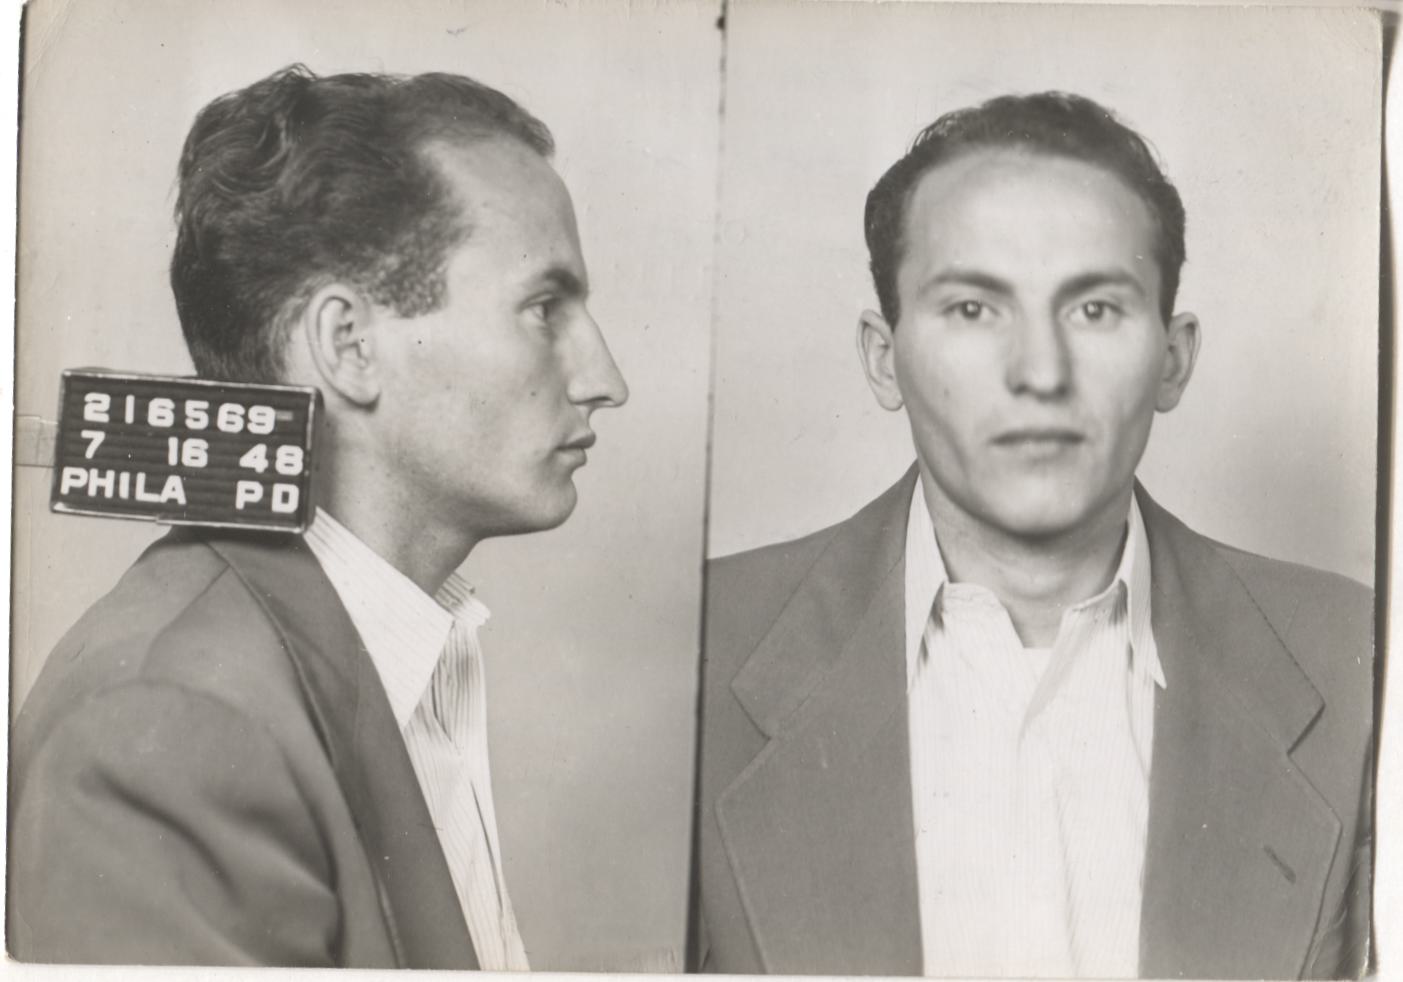 John Millevoi Mugshot - Arrested on 7/16/1948 for Poolselling